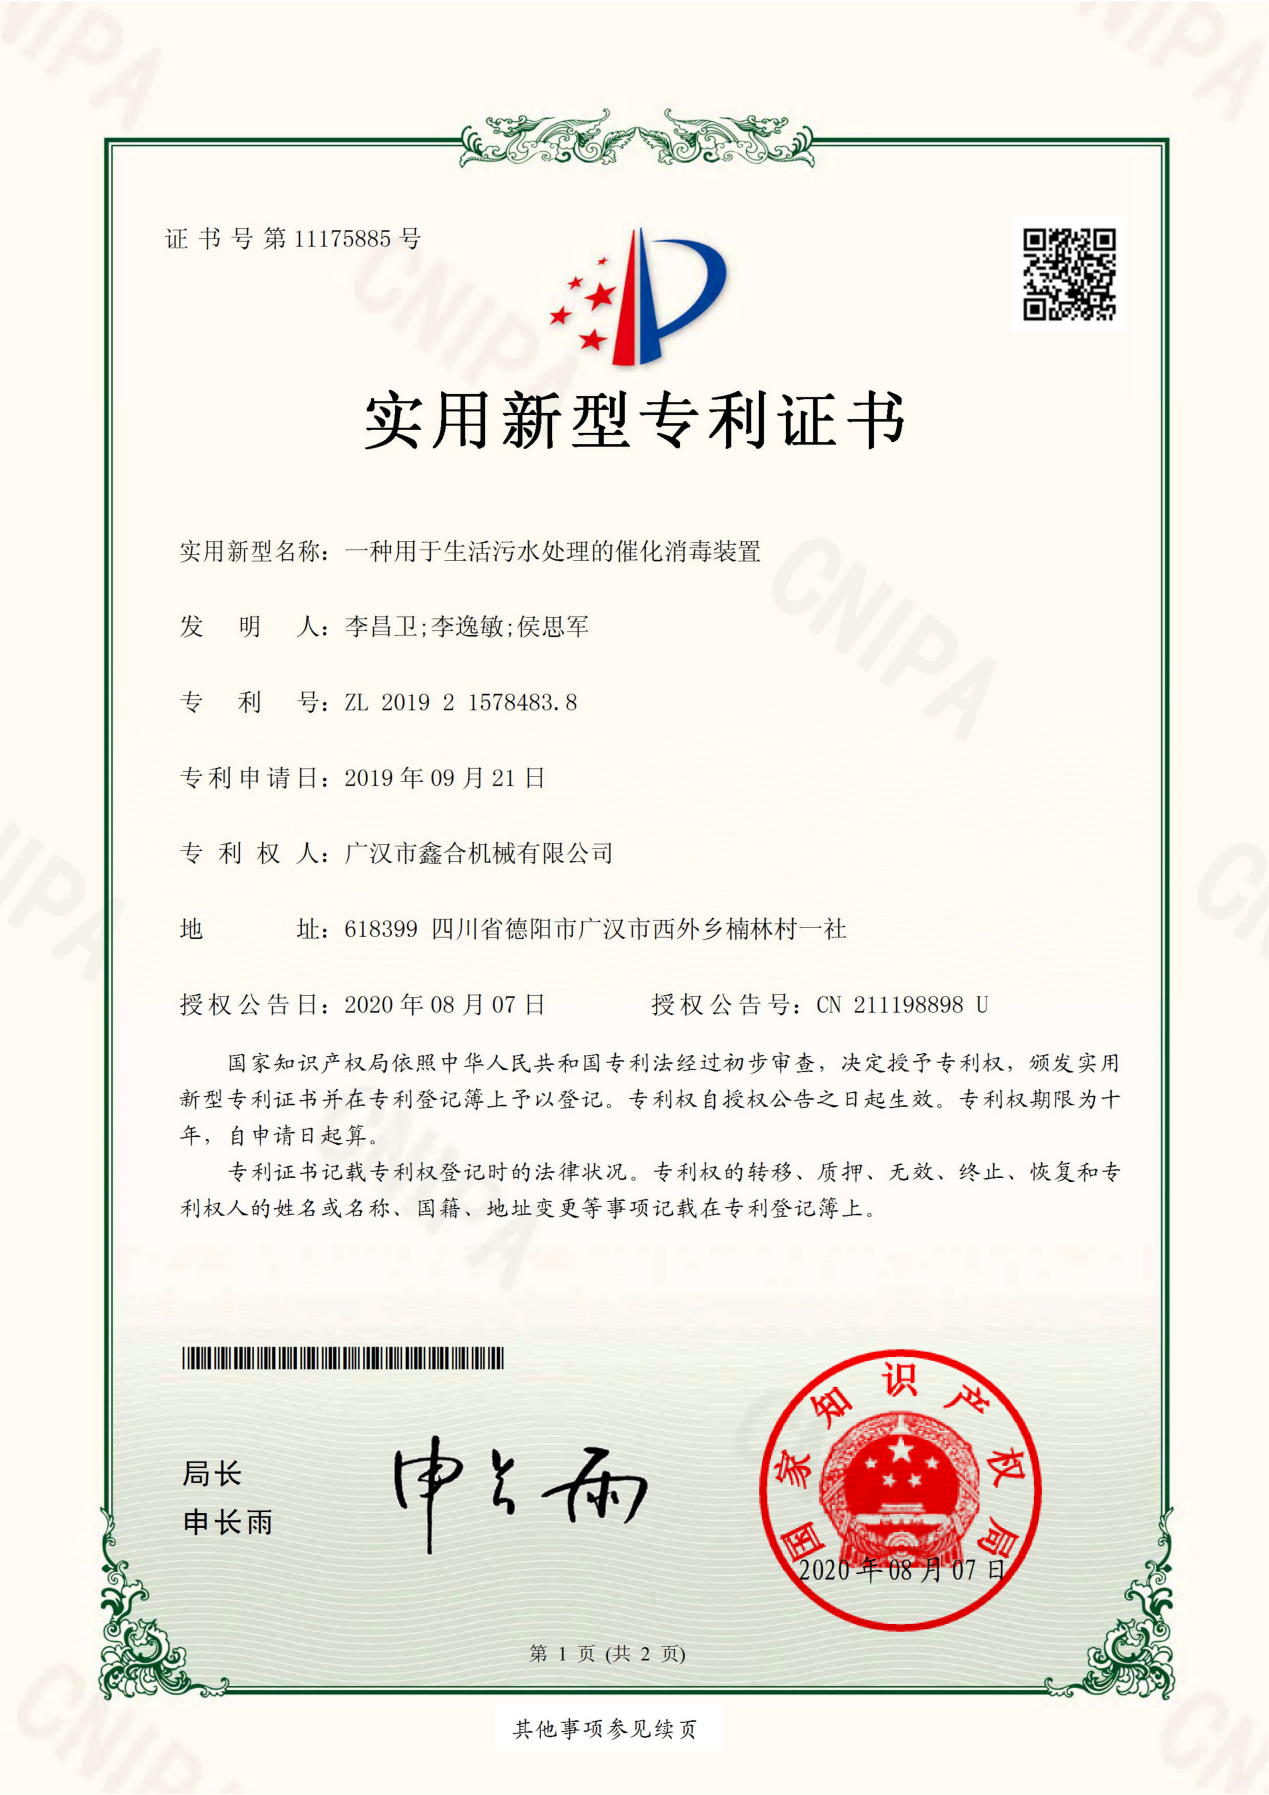 2019215784838-实用新型专利证书(签章)_00